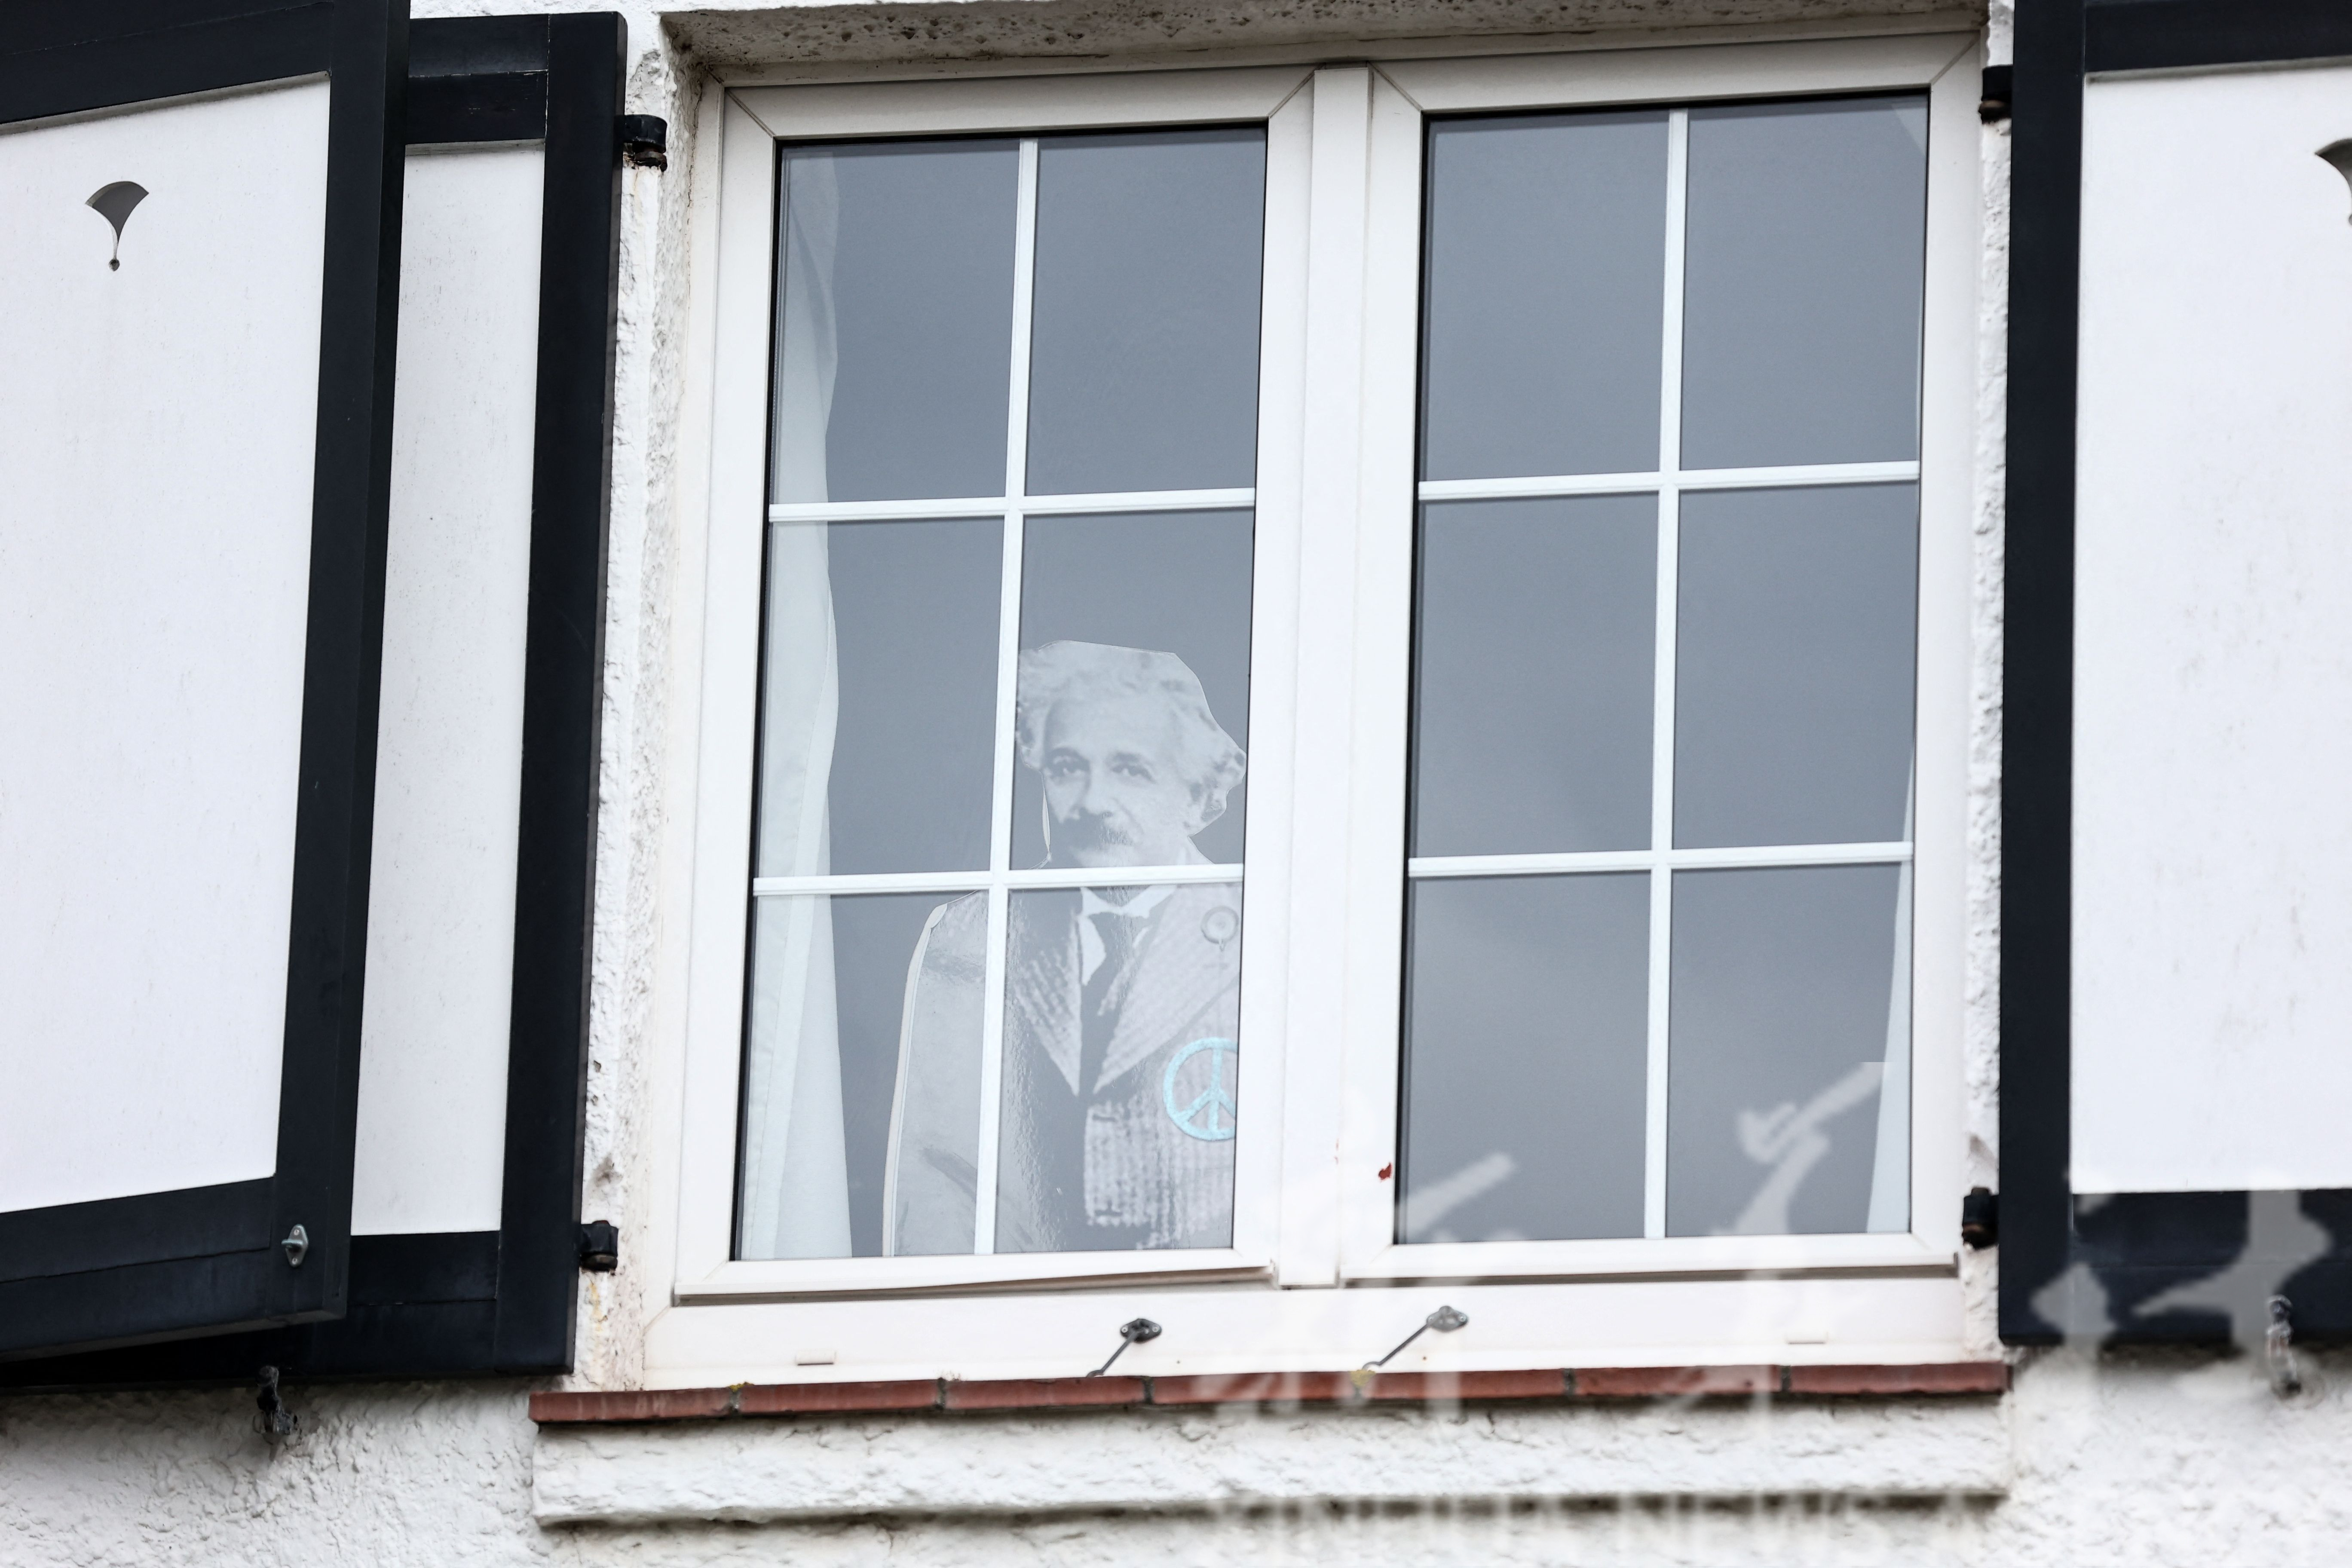 Antimatter. Albert Einstein in a window.